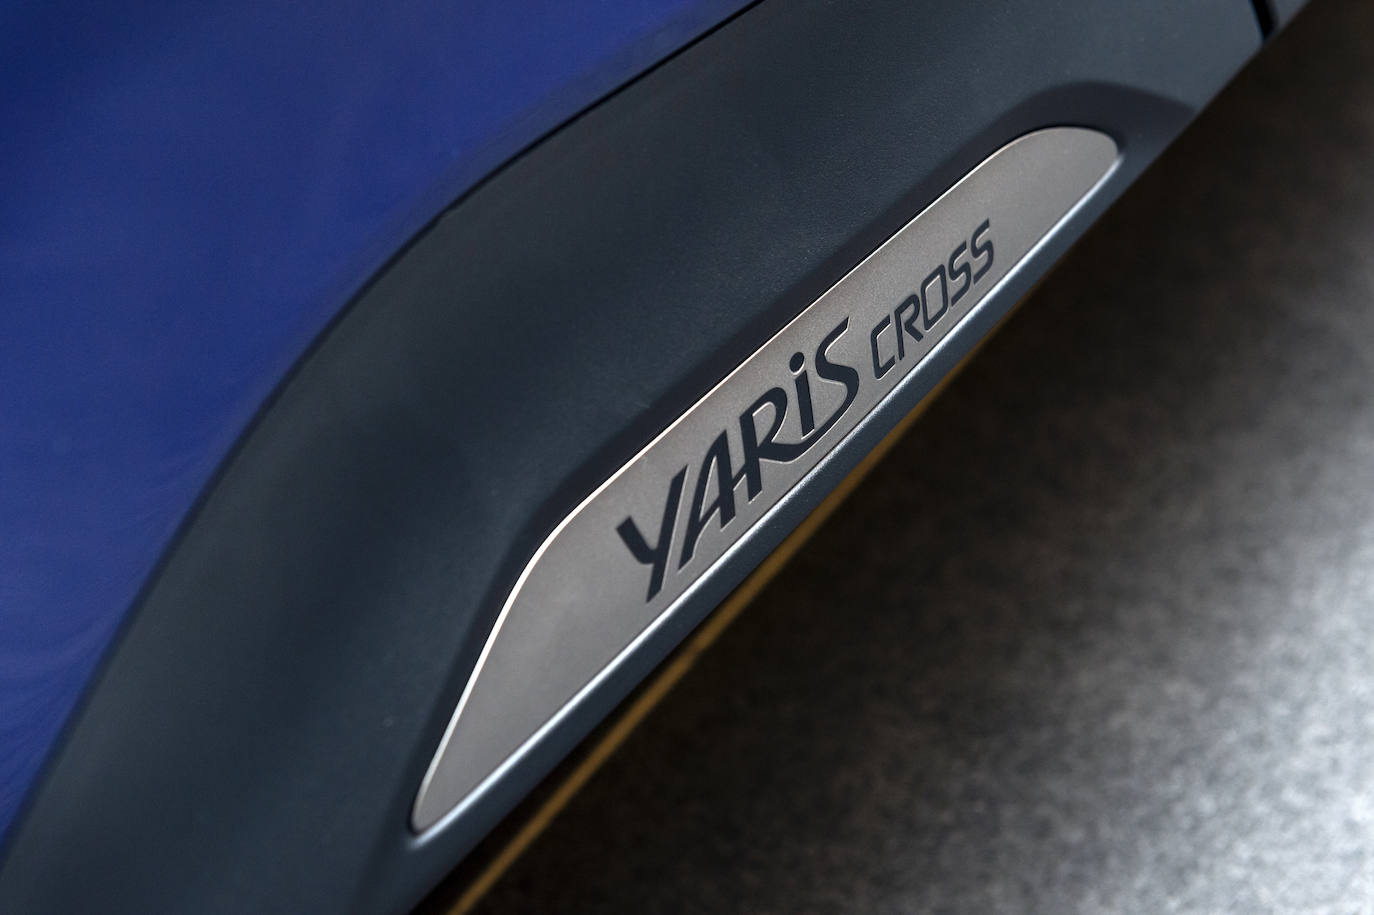 Fotos: Fotogalería: Toyota Yaris Cross